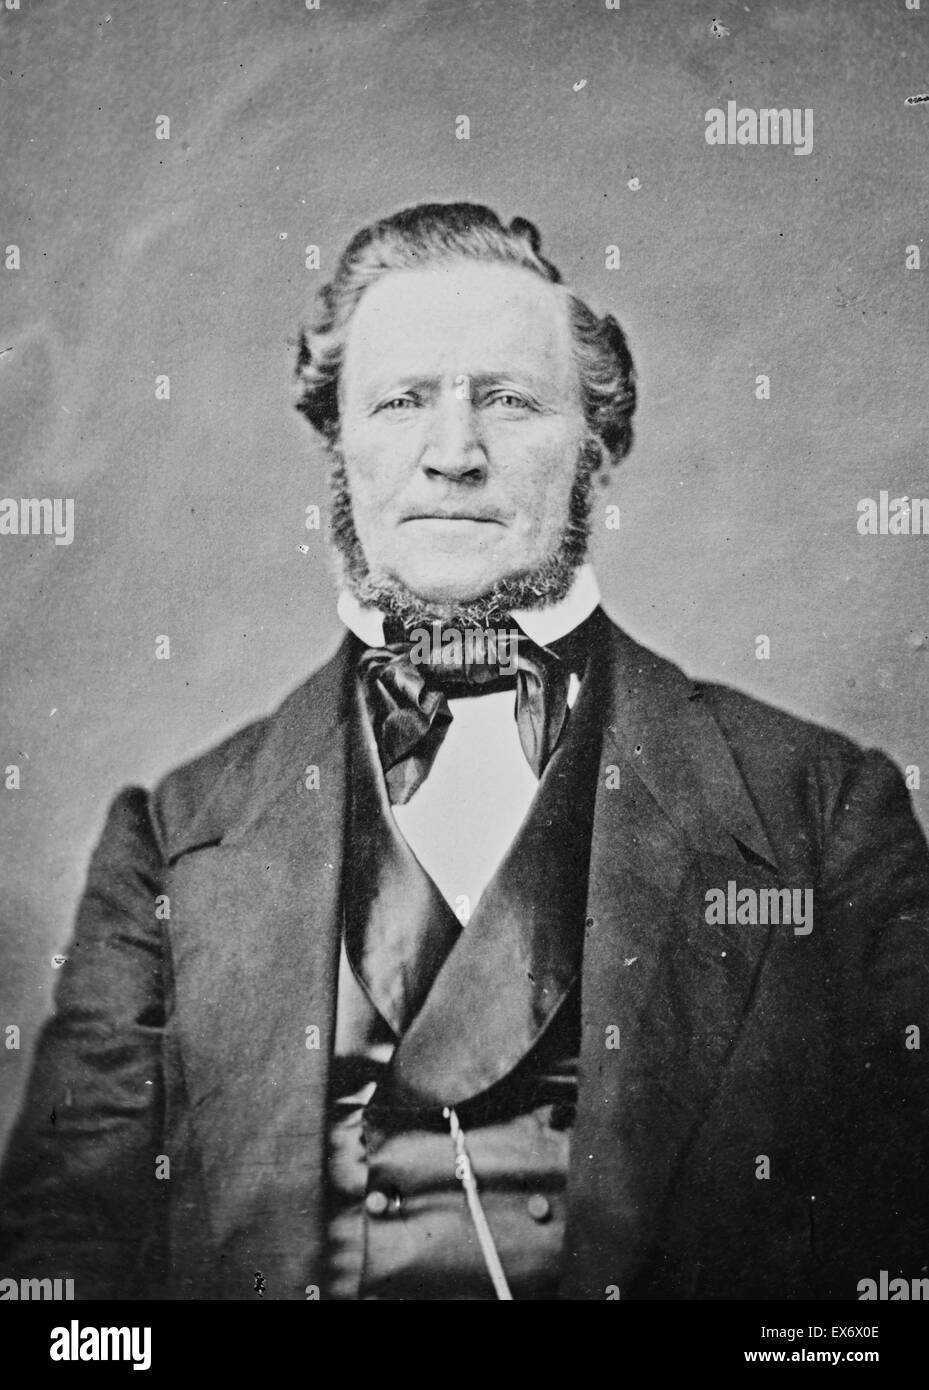 Stampa fotografica di Brigham Young (1801 - 1877) Il leader americano in quest'ultimo giorno San movimento (mormoni) e un decantatore dell'Ovest degli Stati Uniti. Datata 1870 Foto Stock